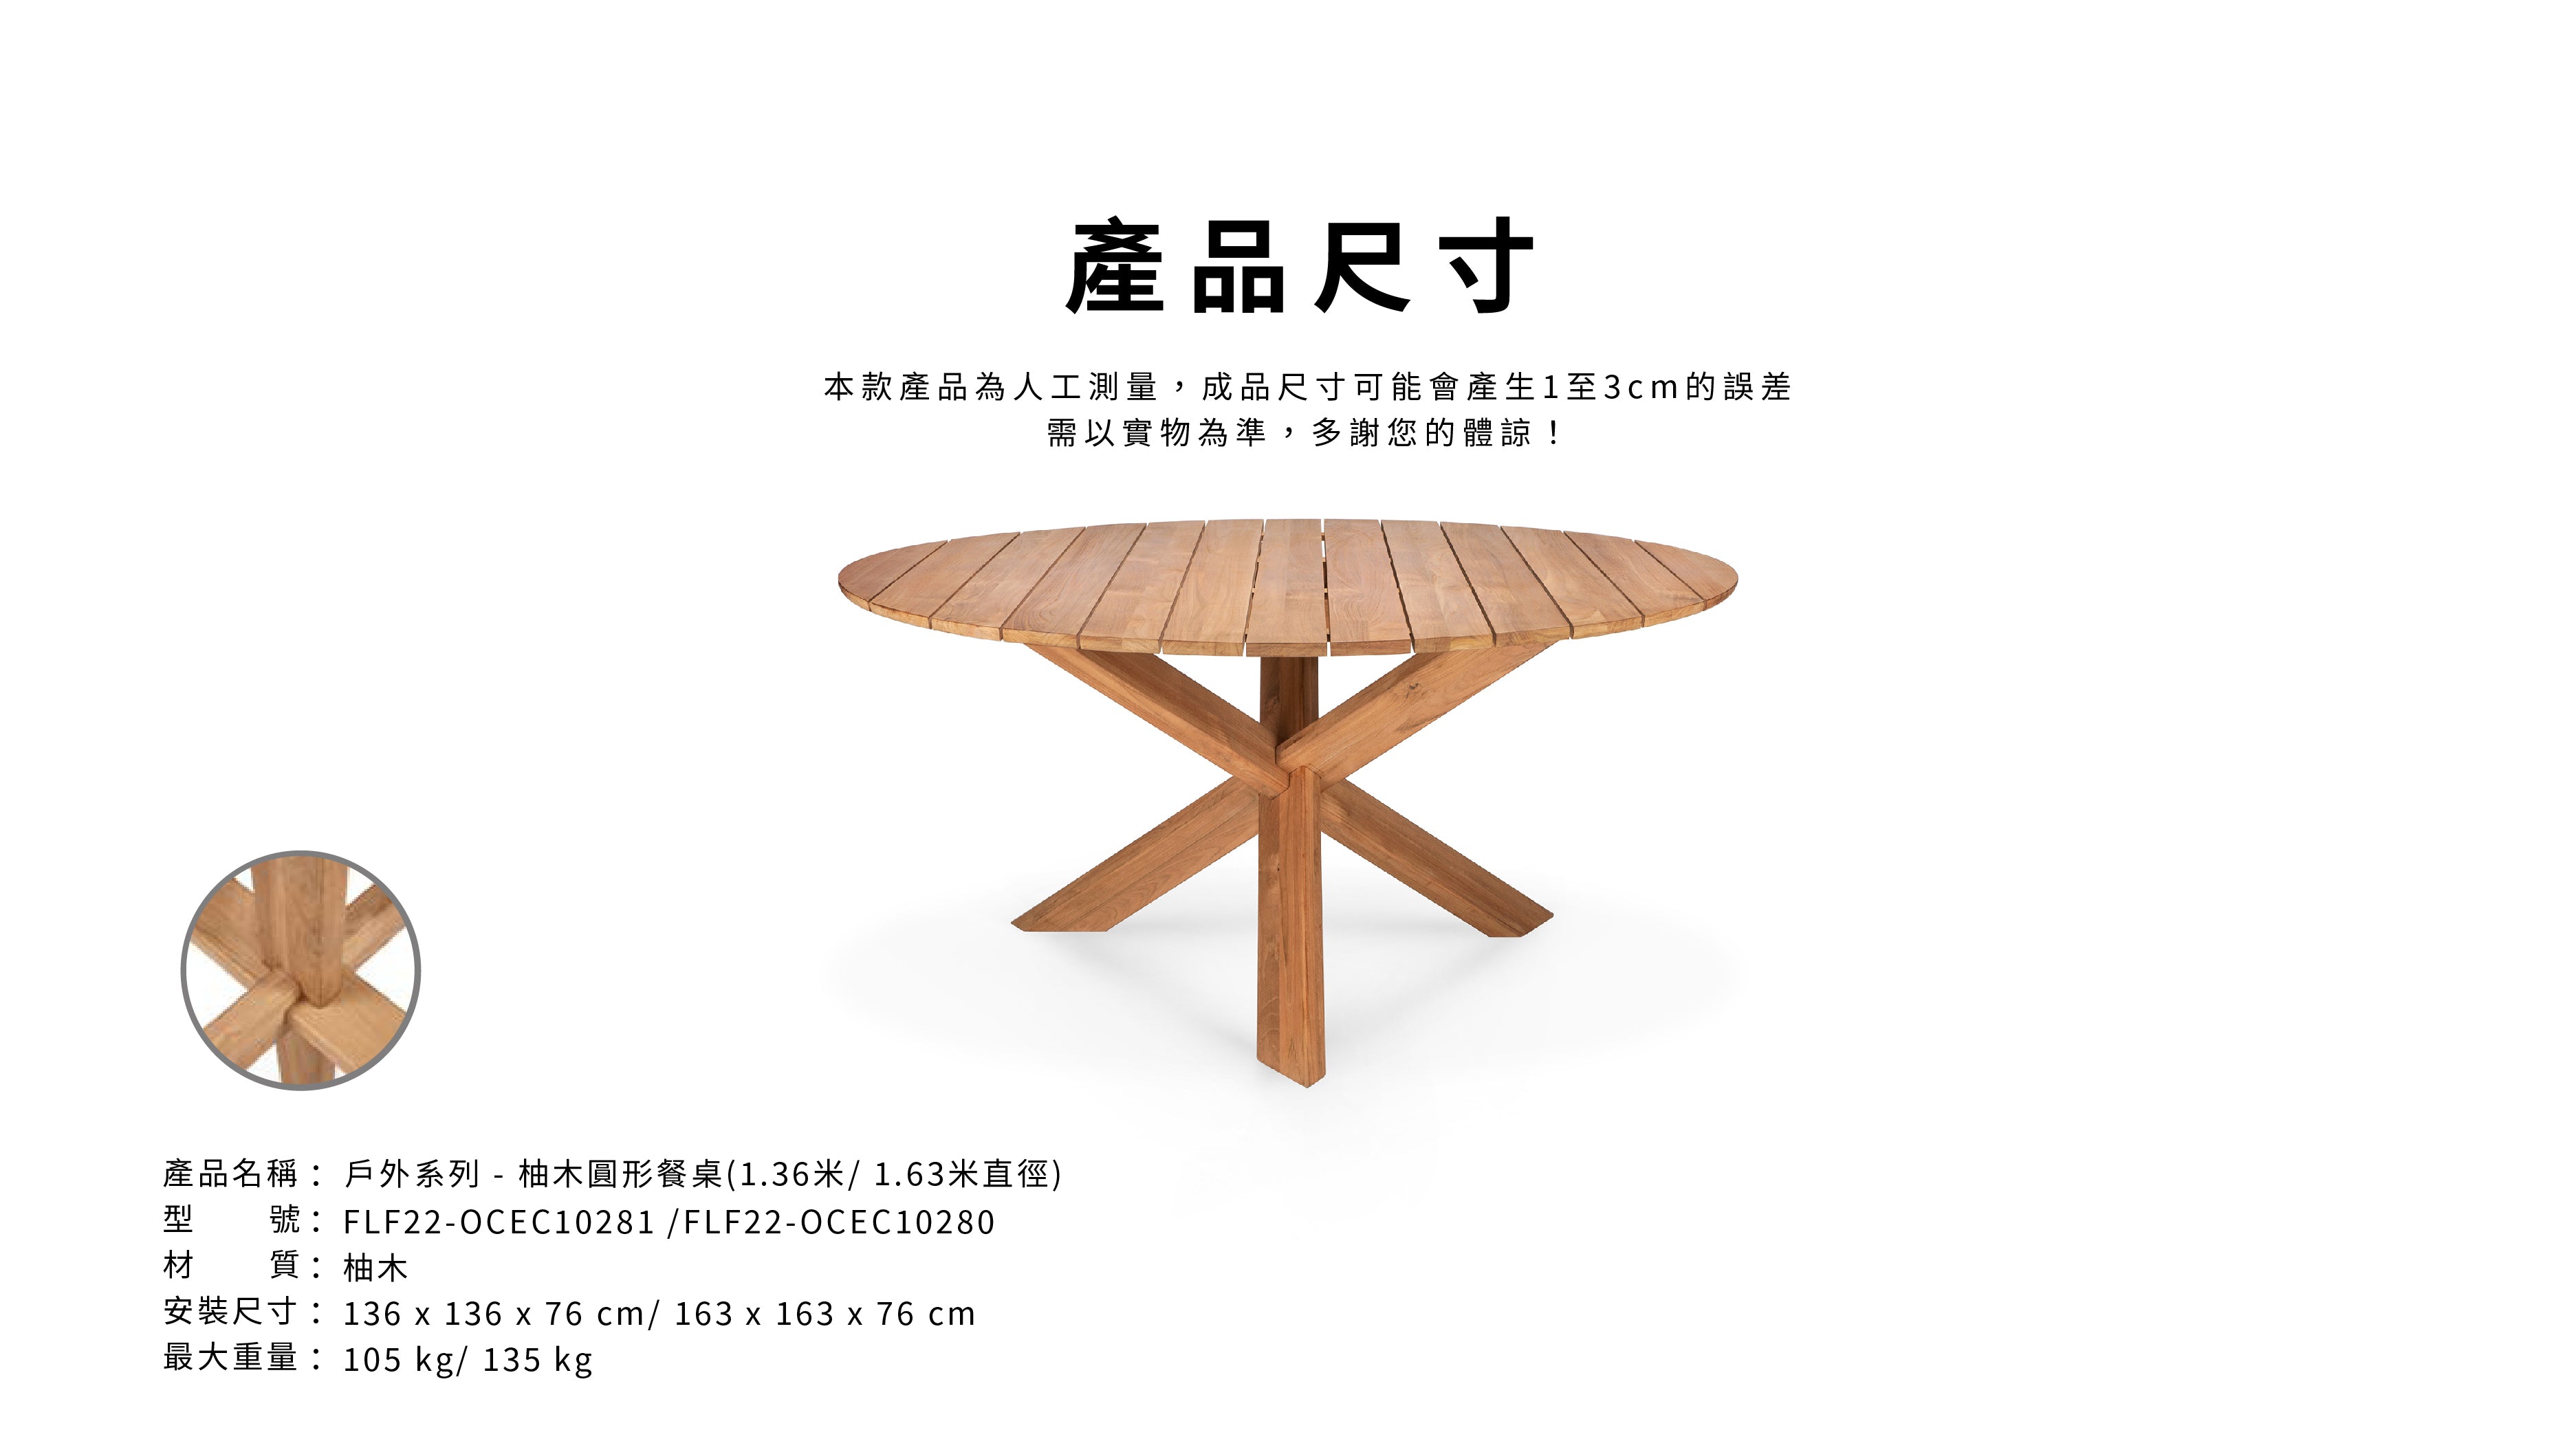 比利時原裝進口實木傢俬 - 戶外系列 - Circle系列柚木圓形餐桌